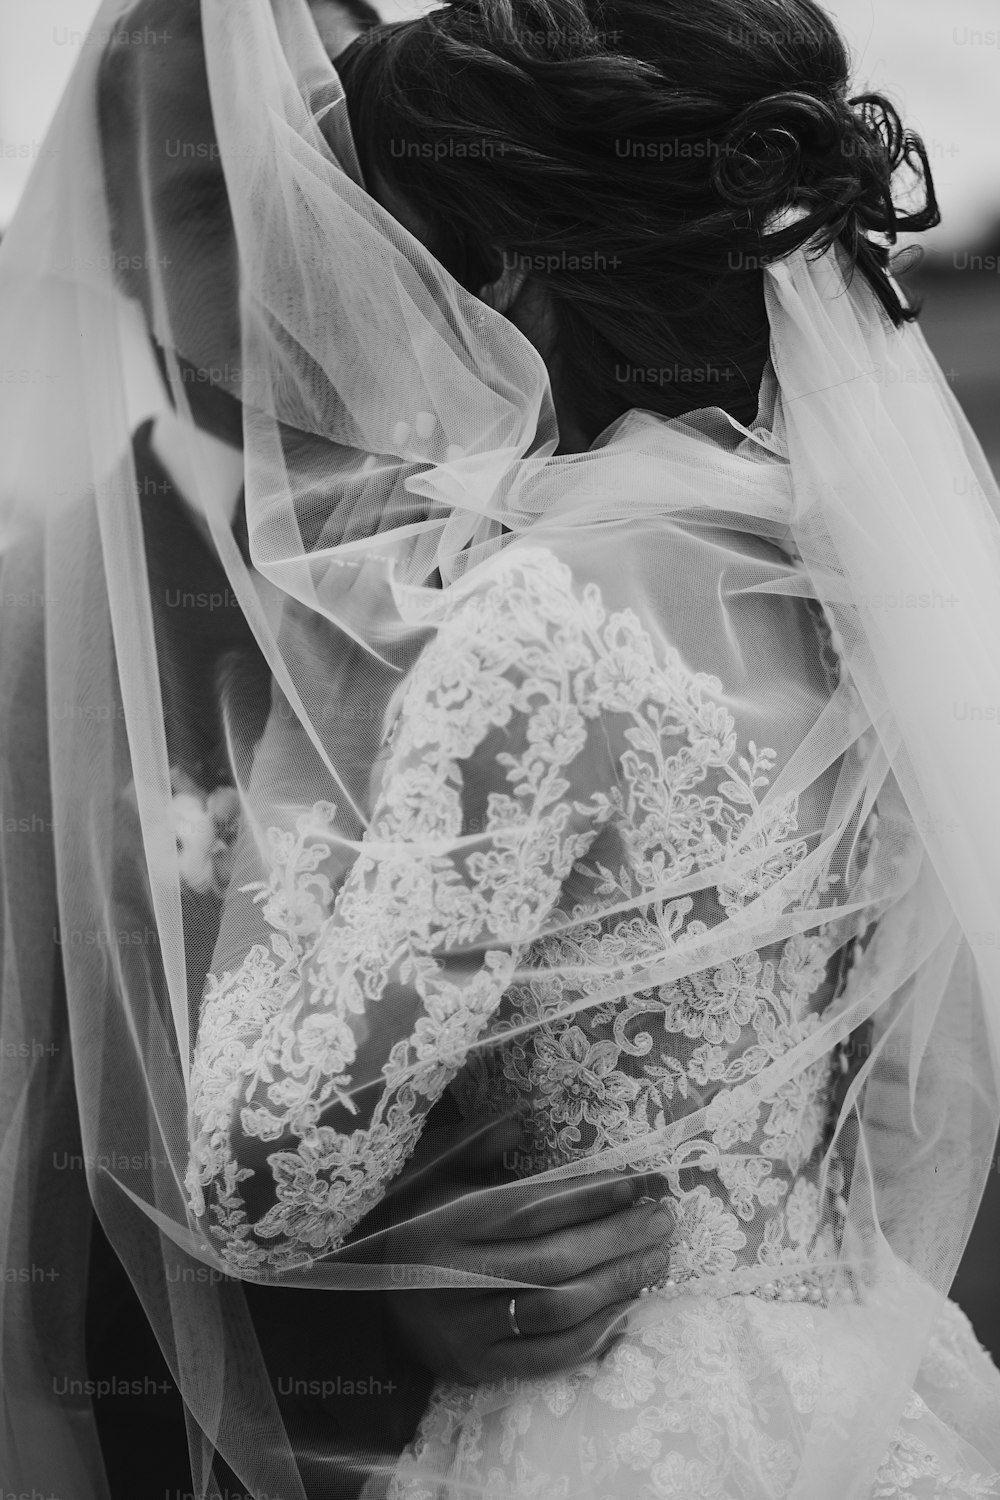 Stilvolle glückliche Braut und Bräutigam, die sich unter Schleier umarmen und umarmen, in der Nähe von Retro-Auto. Luxus-Hochzeitspaar Brautpaar, sinnlicher romantischer Moment. Platz für Text. Schwarz-Weiß-Foto